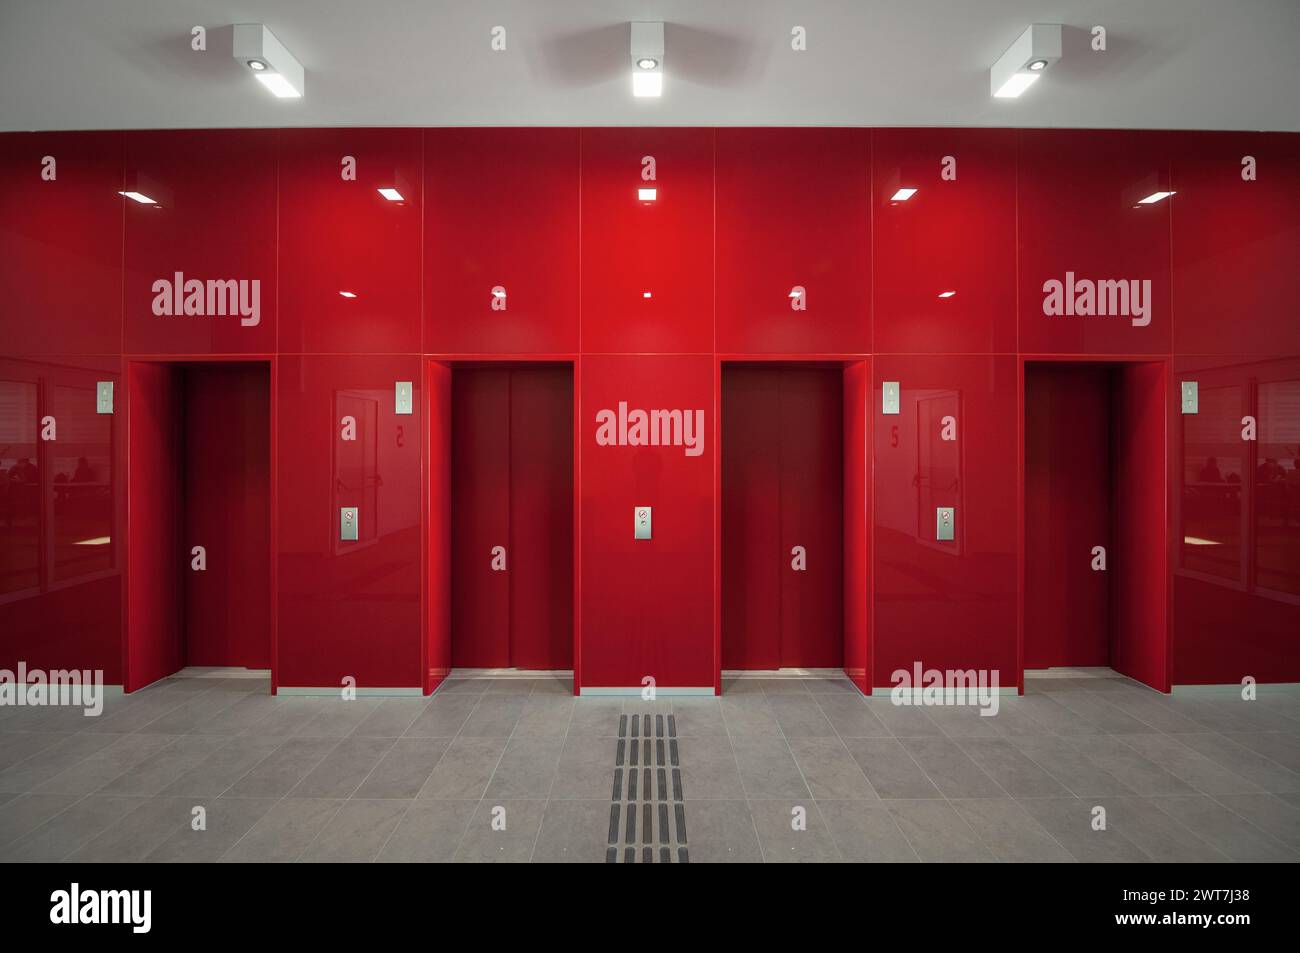 Vier Aufzugstüren in einer roten Wand. Zweidimensionales Bild der glänzend roten Wand im ersten Stock mit taktiler Markierung. Leere Innenlobby des neuen Gebäudes. Stockfoto